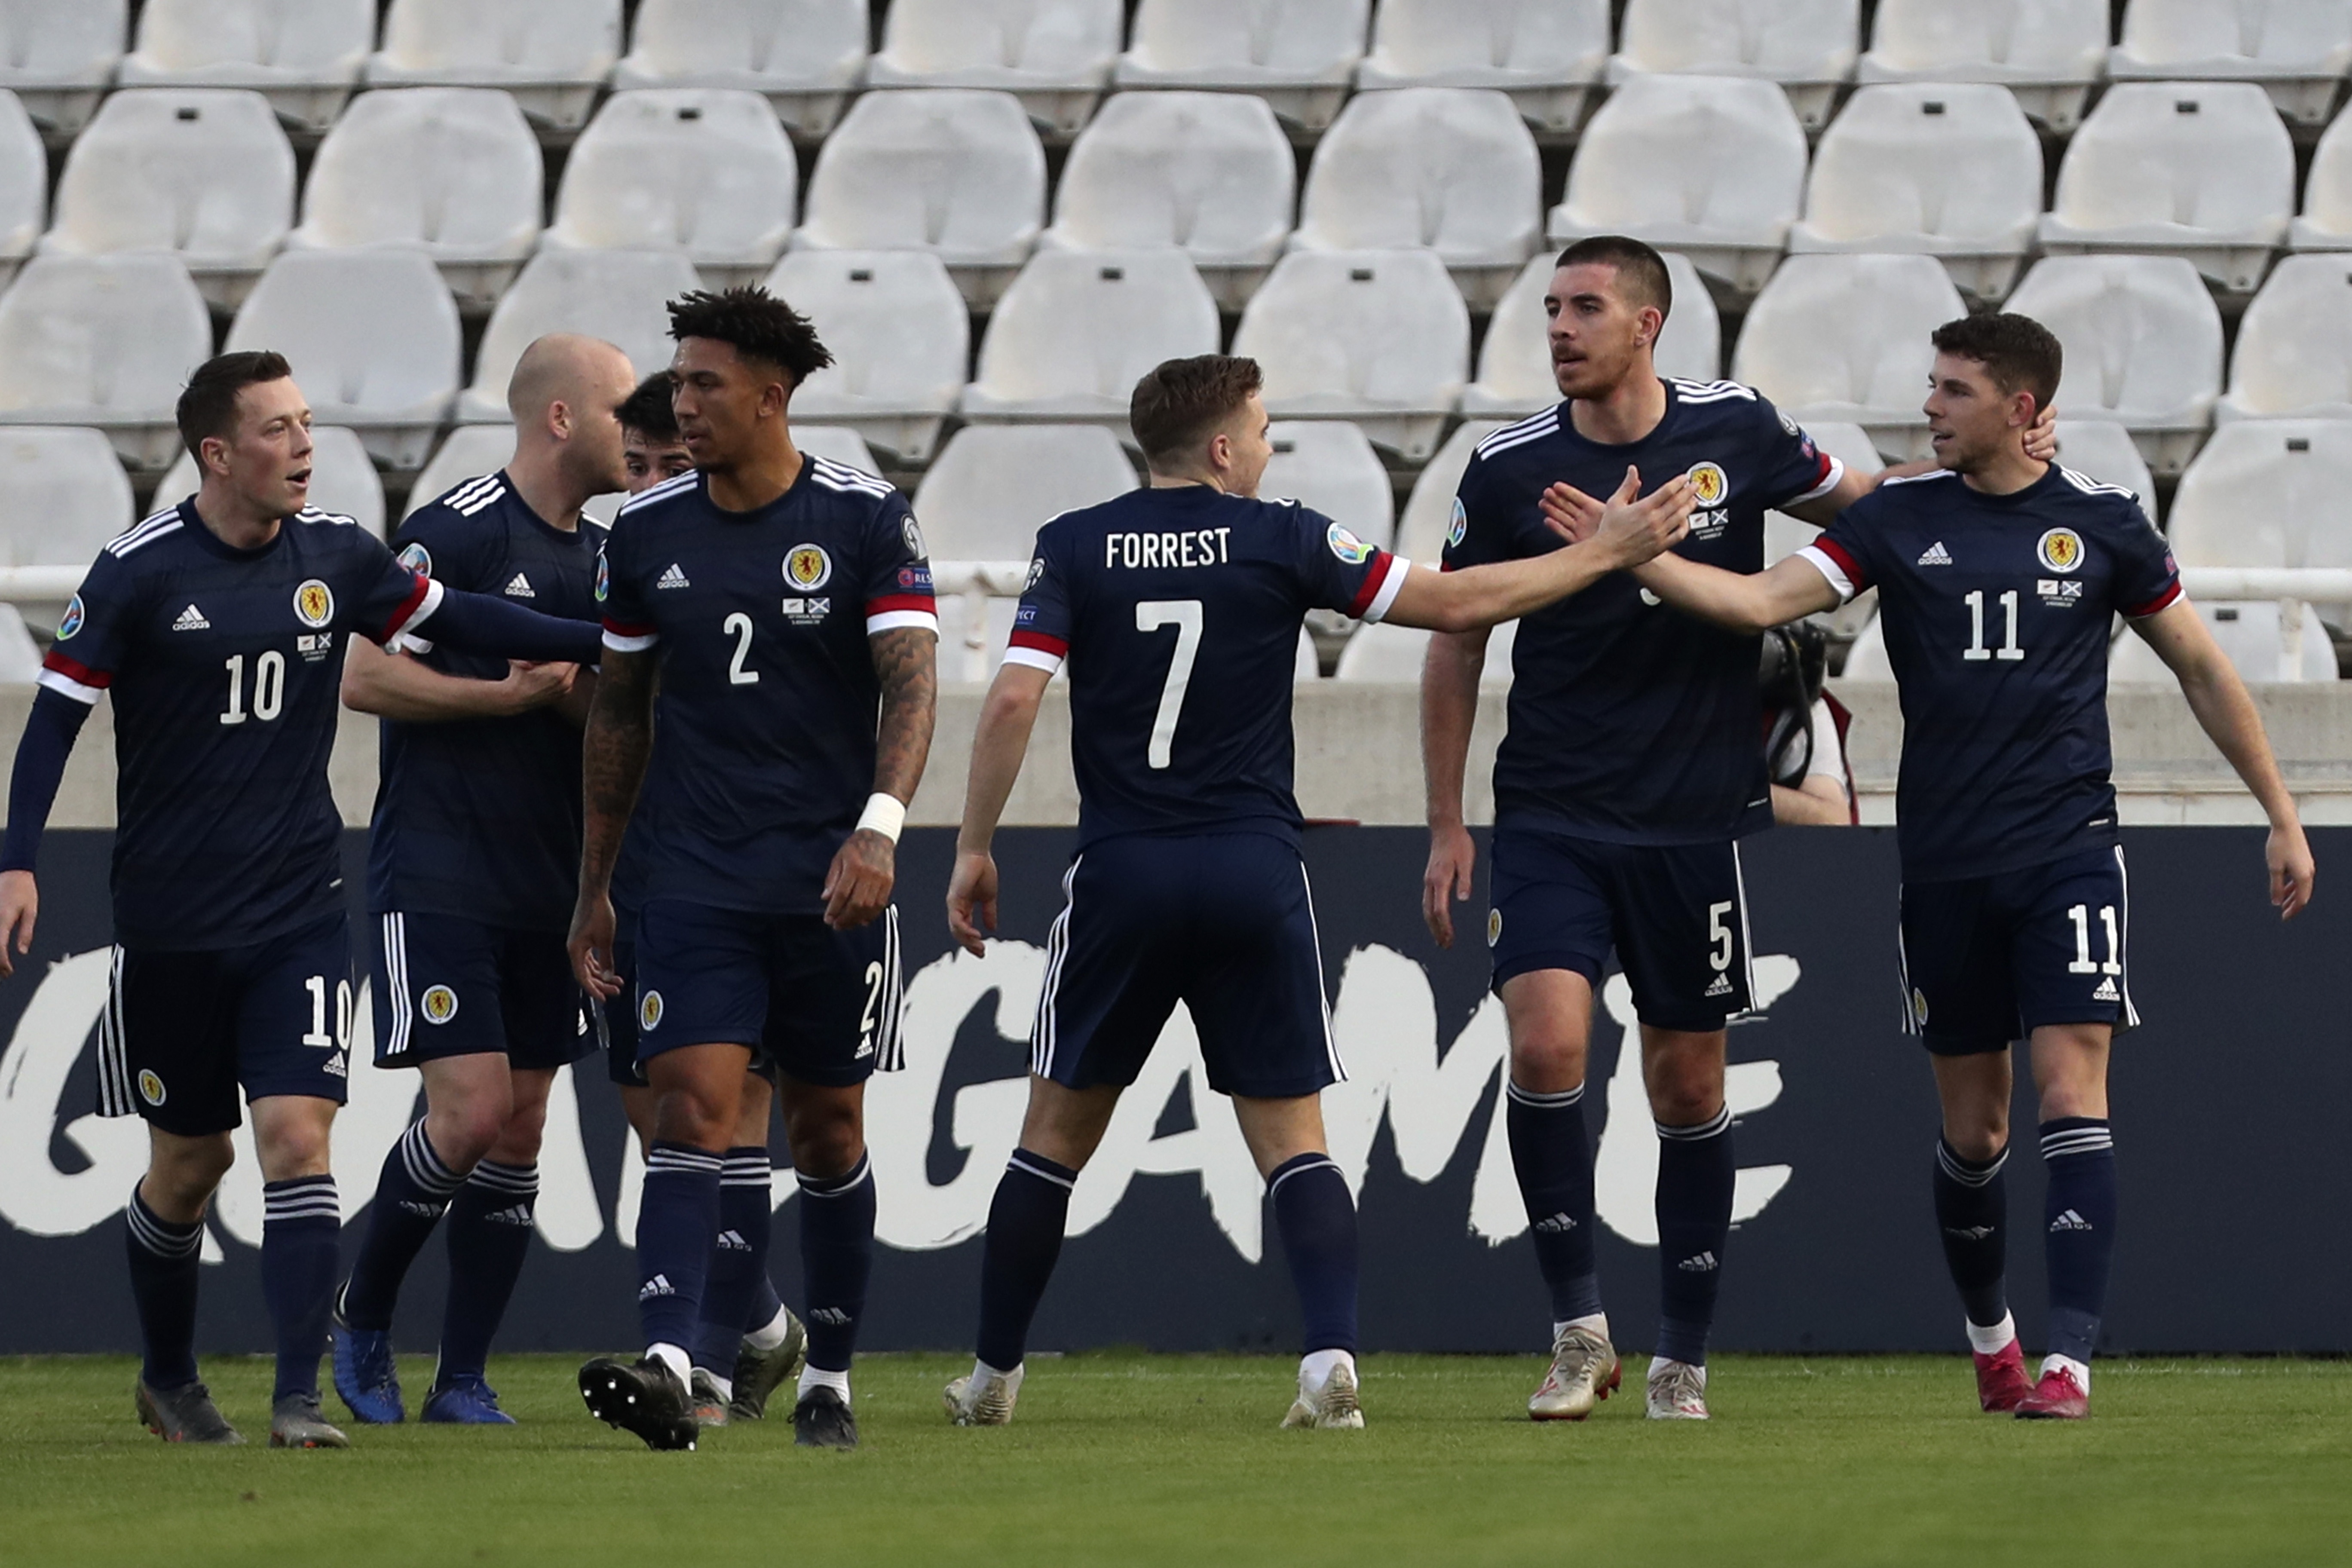 Futbalista Škótska Ryan Christie (vpravo) sa teší so spoluhráčmi po strelení gólu v kvalifikačnom zápase I-skupiny Cyprus - Škótsko v Nikózii 16. novembra 2019.